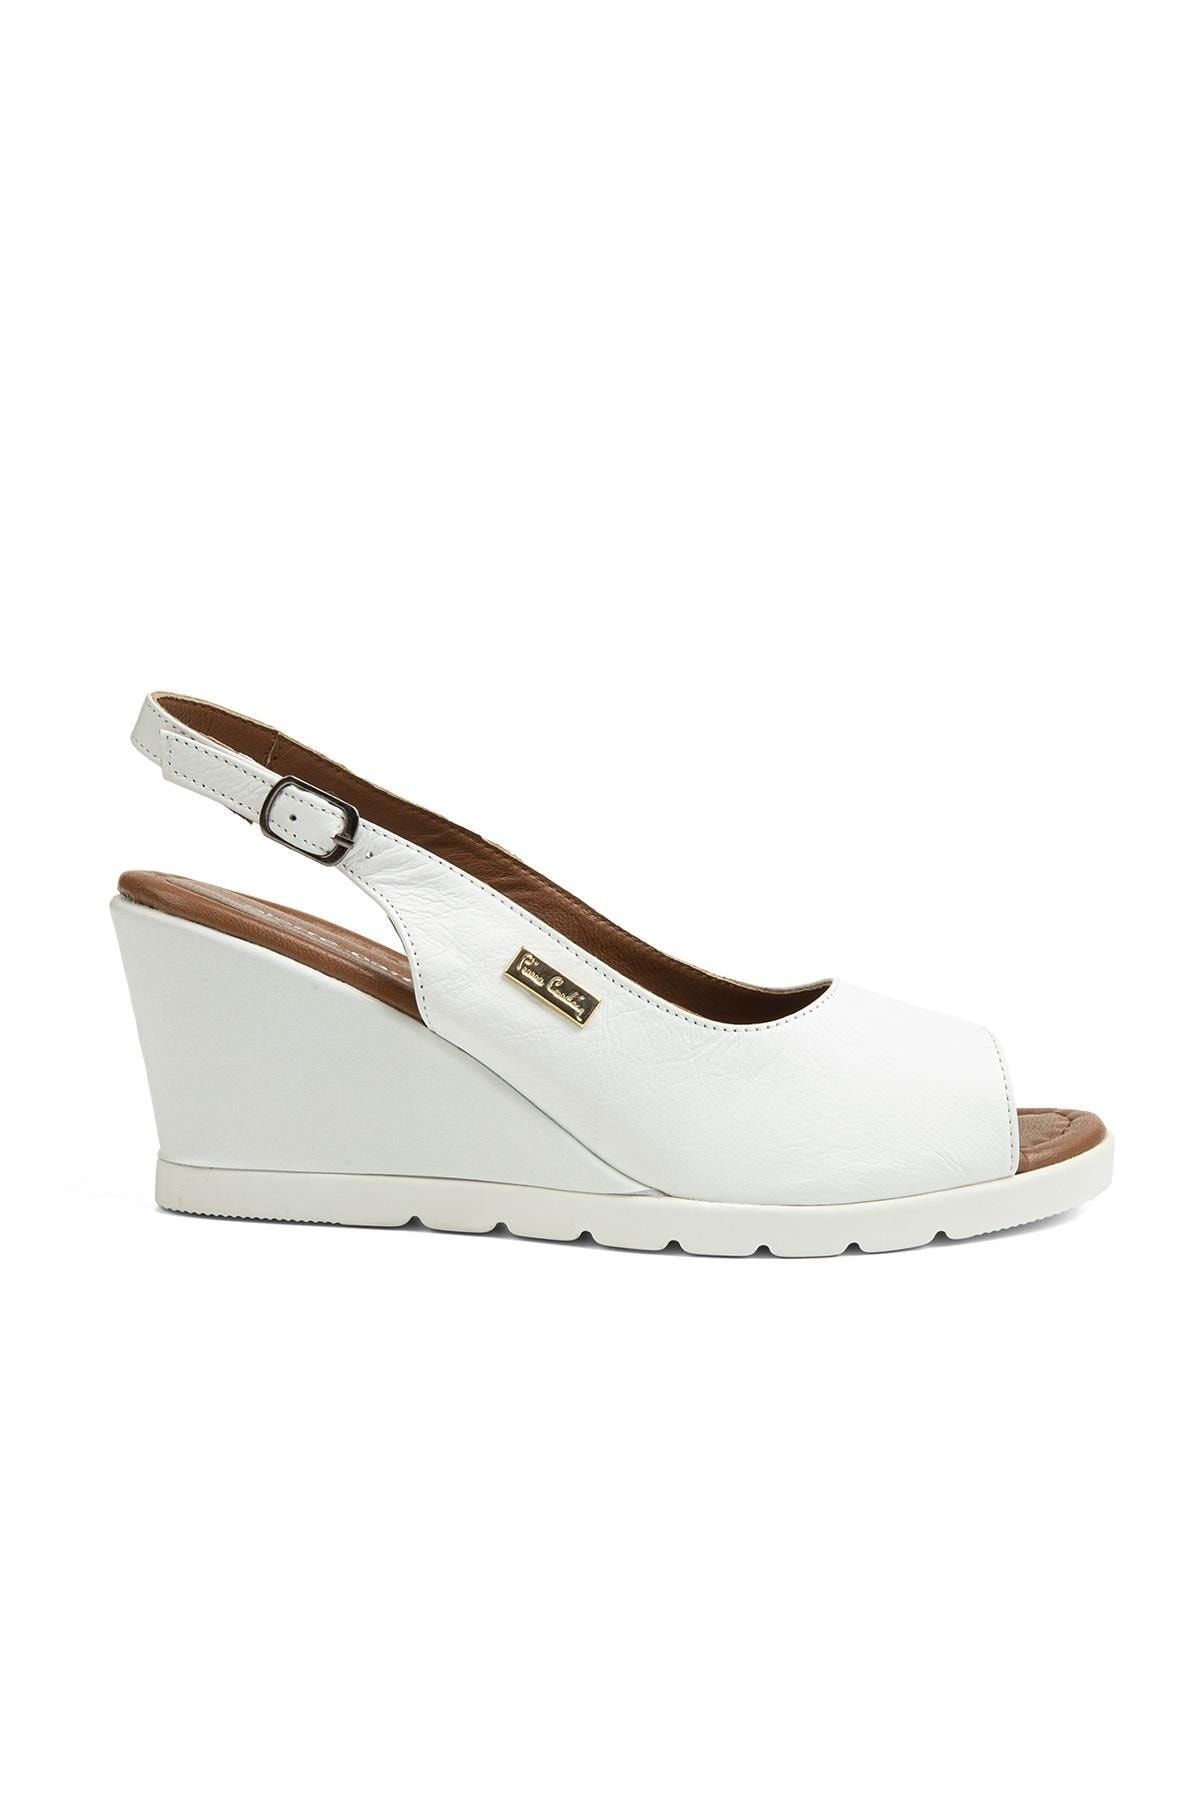 Pierre Cardin ® | Pc-51851-3807 Beyaz - Kadın Topuklu Ayakkabı